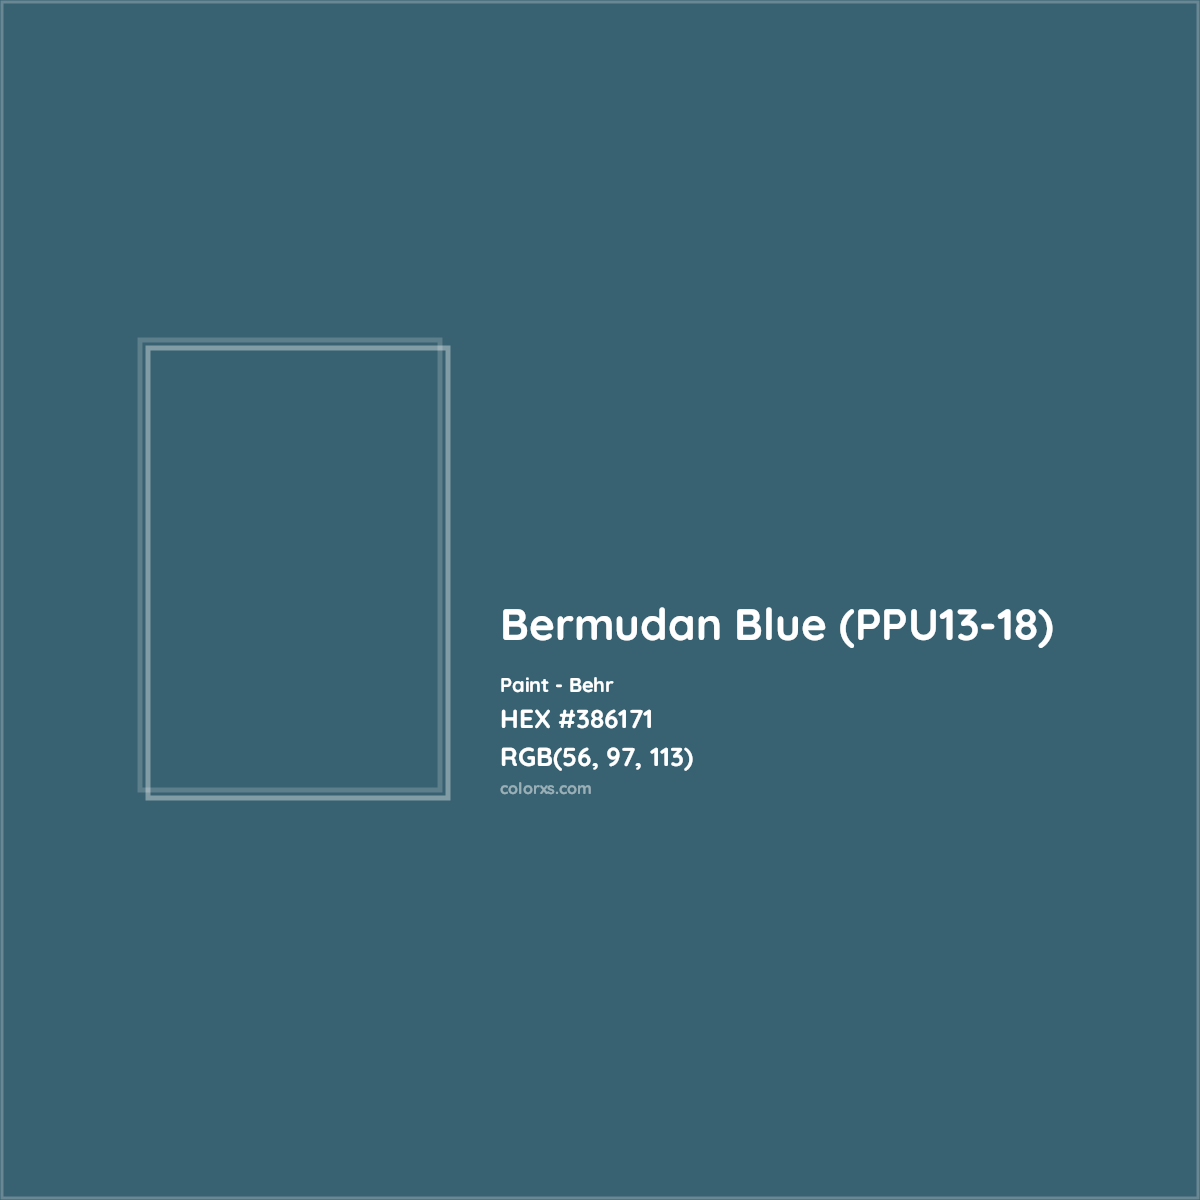 HEX #386171 Bermudan Blue (PPU13-18) Paint Behr - Color Code